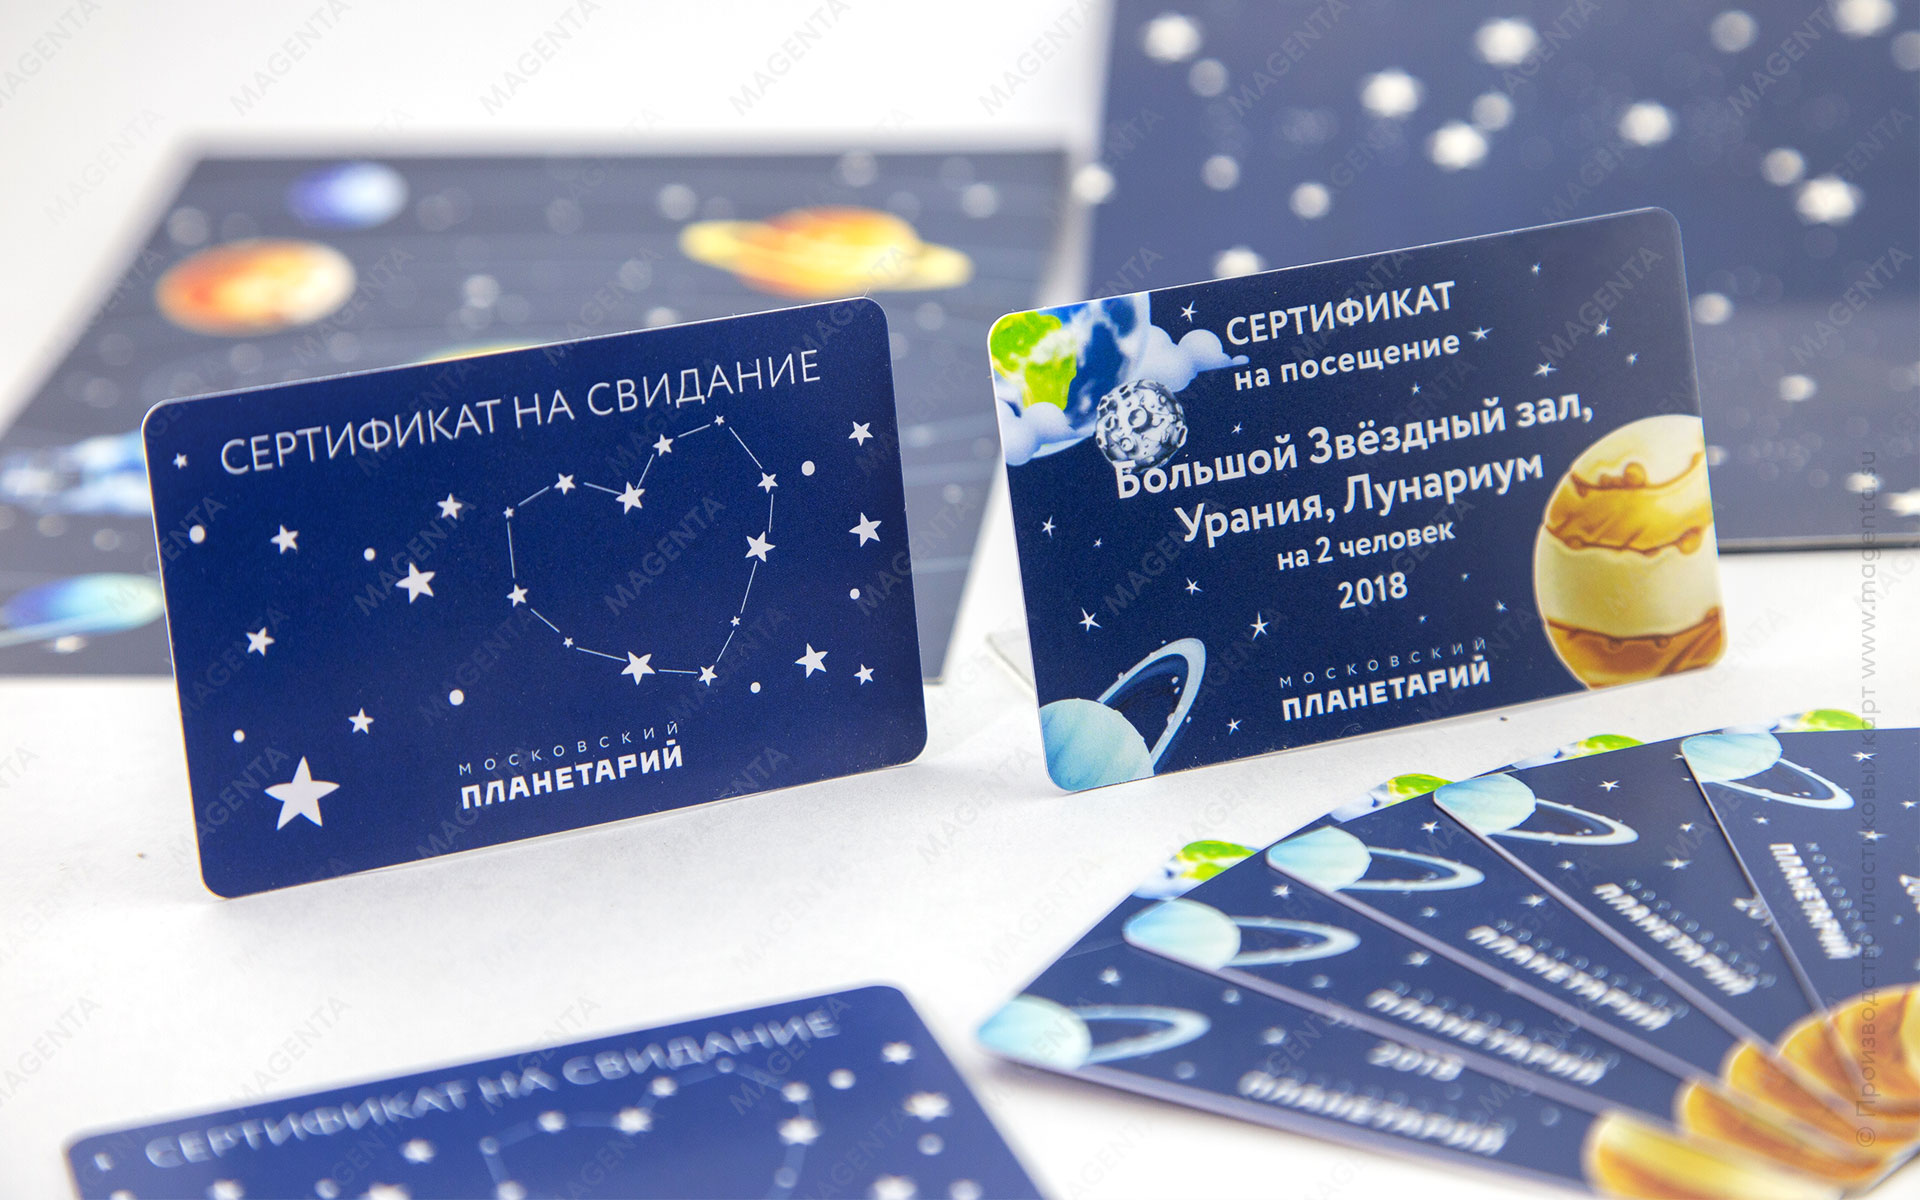 Фотография с изображением подарочных сертификатов для Московского Планетария на фоне открыток